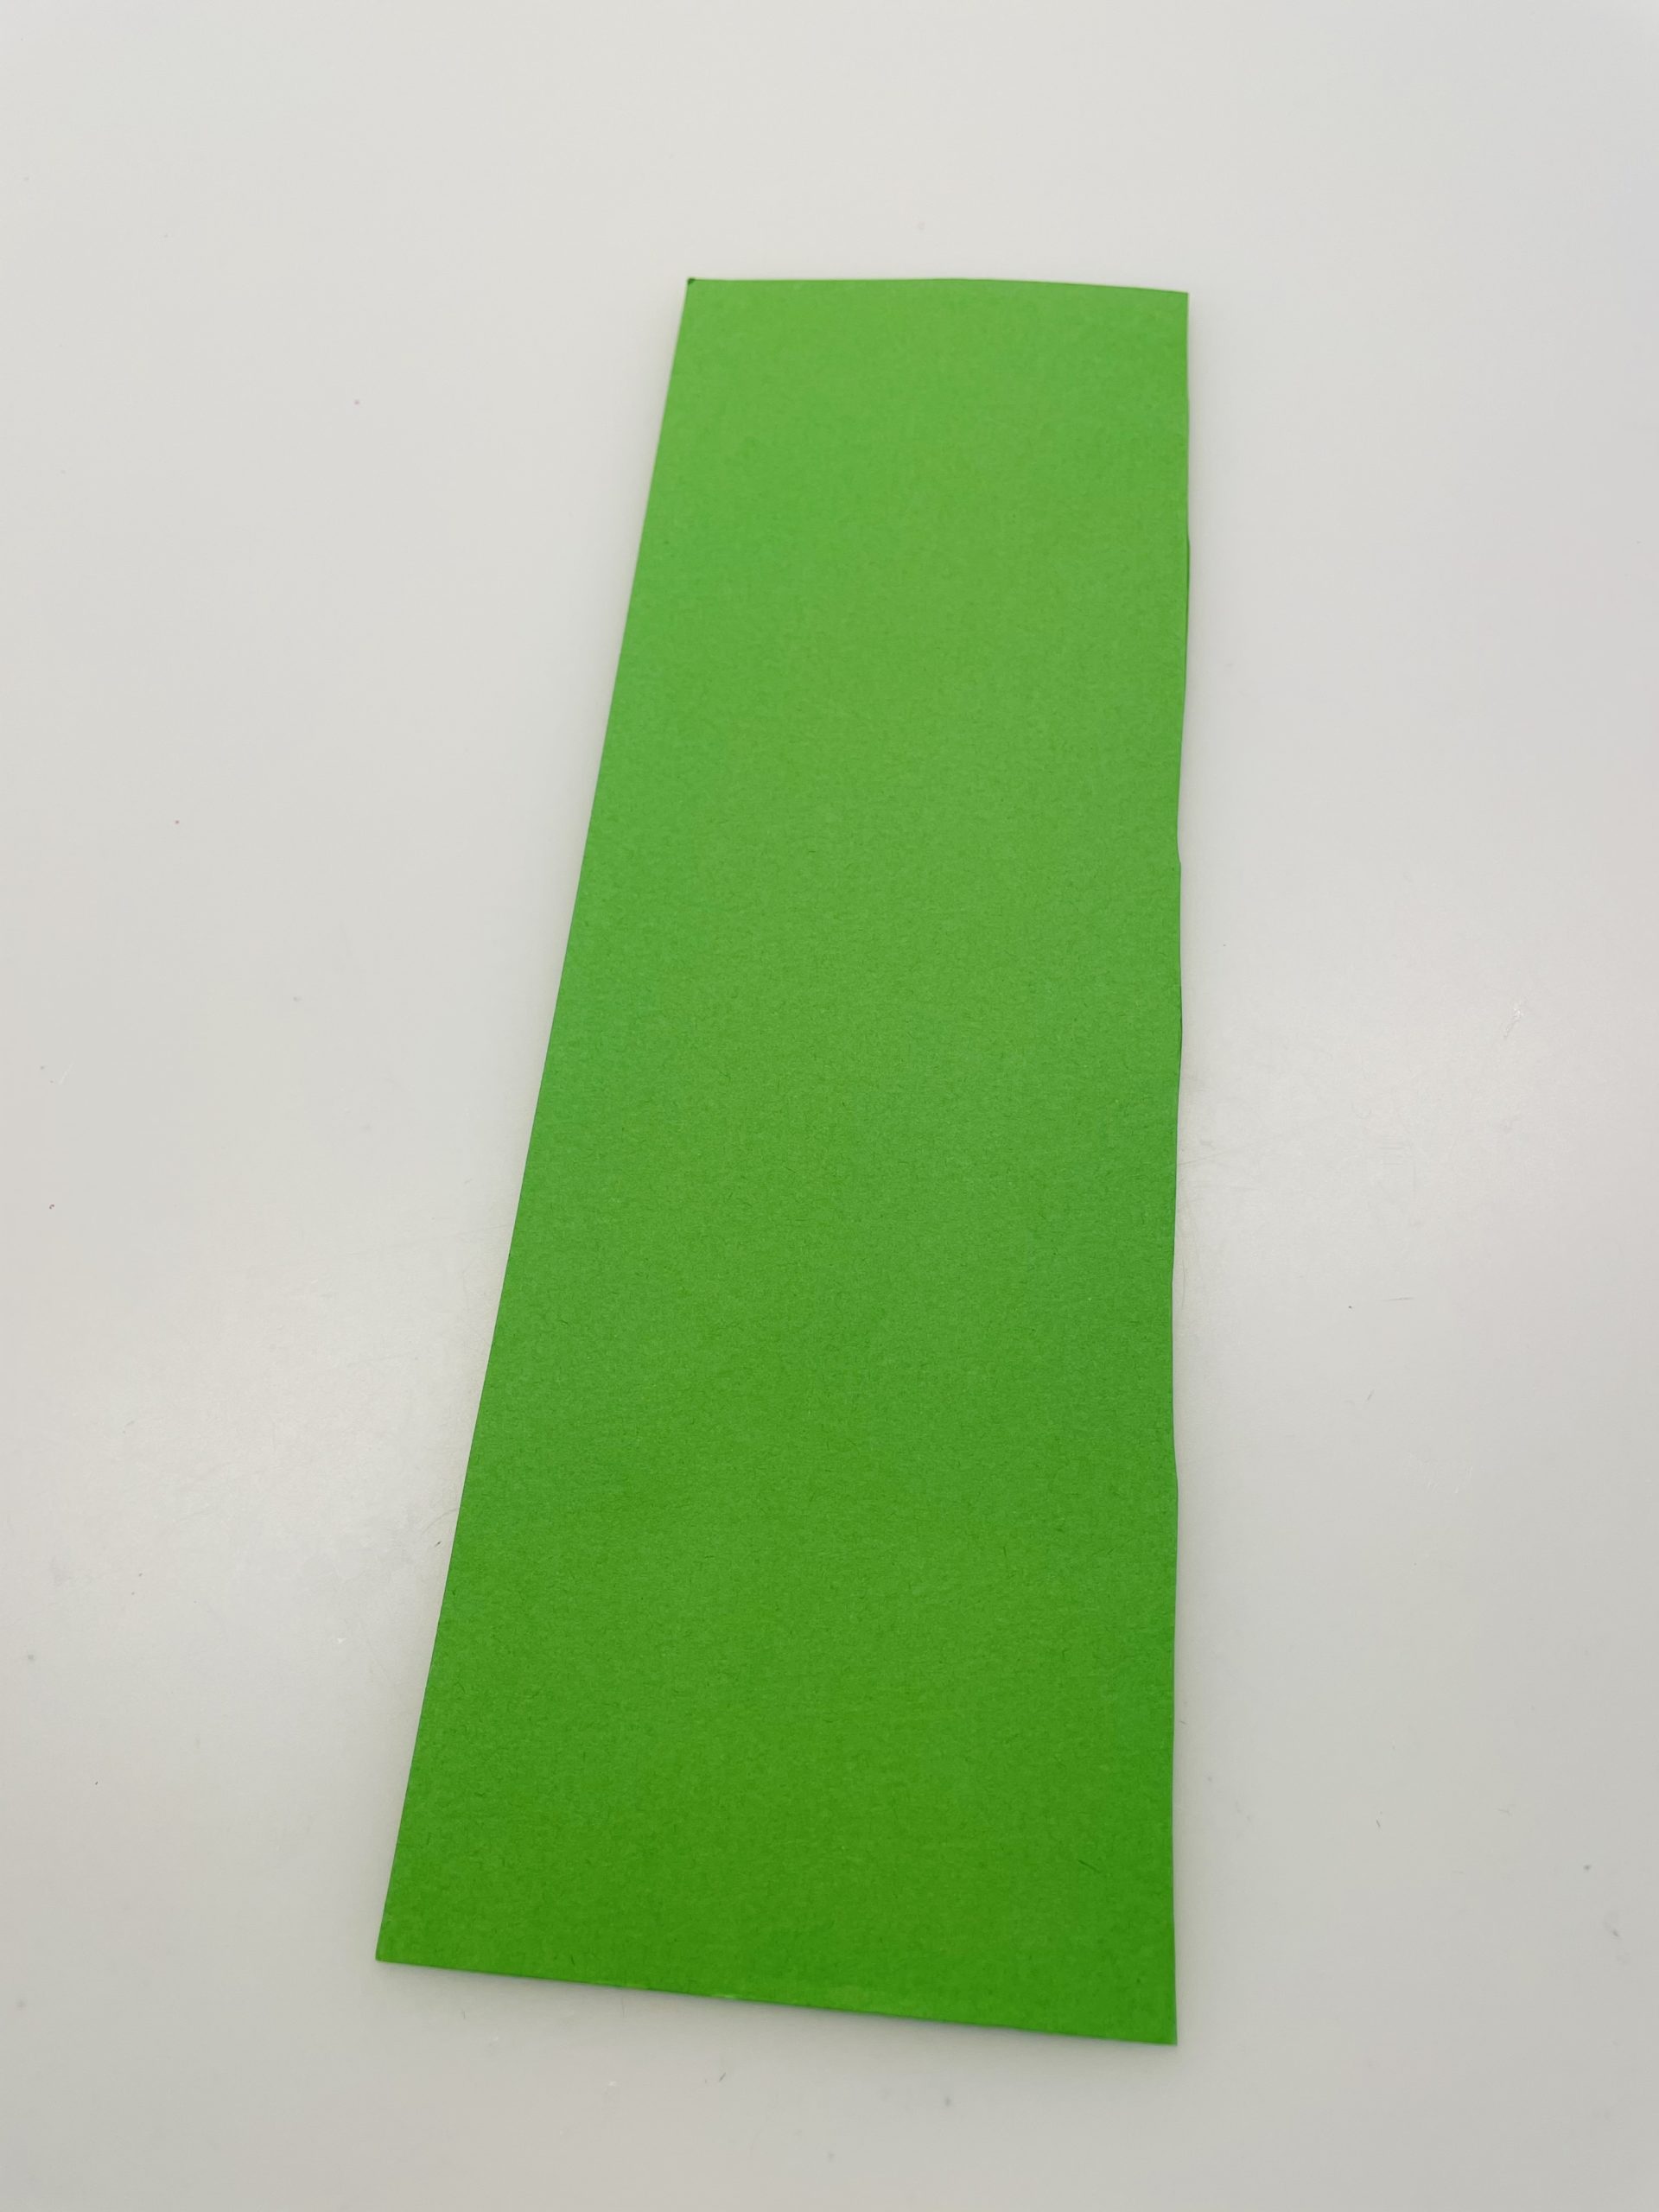 Bild zum Schritt 10 für die Kinder-Beschäftigung: 'Schneidet jetzt einen Streifen grünes Papier auf die Maße 5cm...'